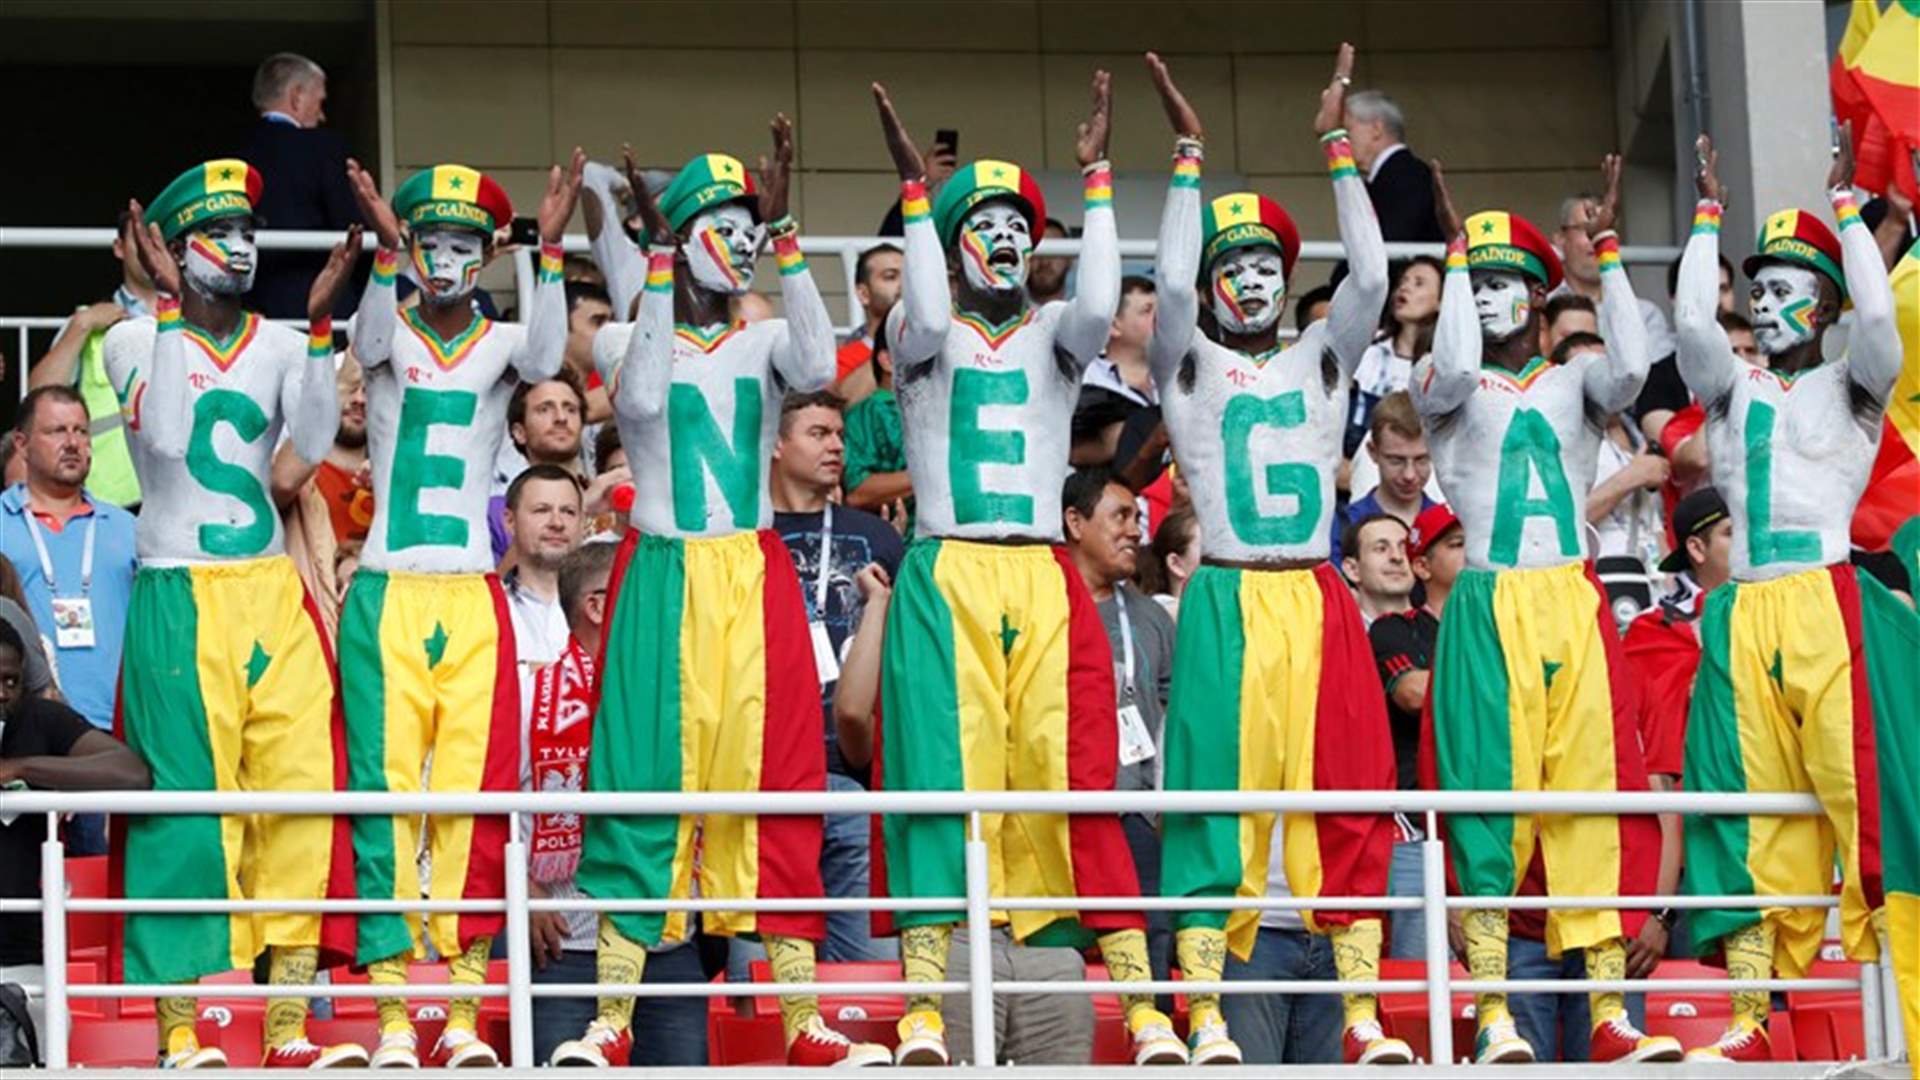 بالفيديو - مشجعو السنغال يحتلون الصدارة بالرقي والأخلاق